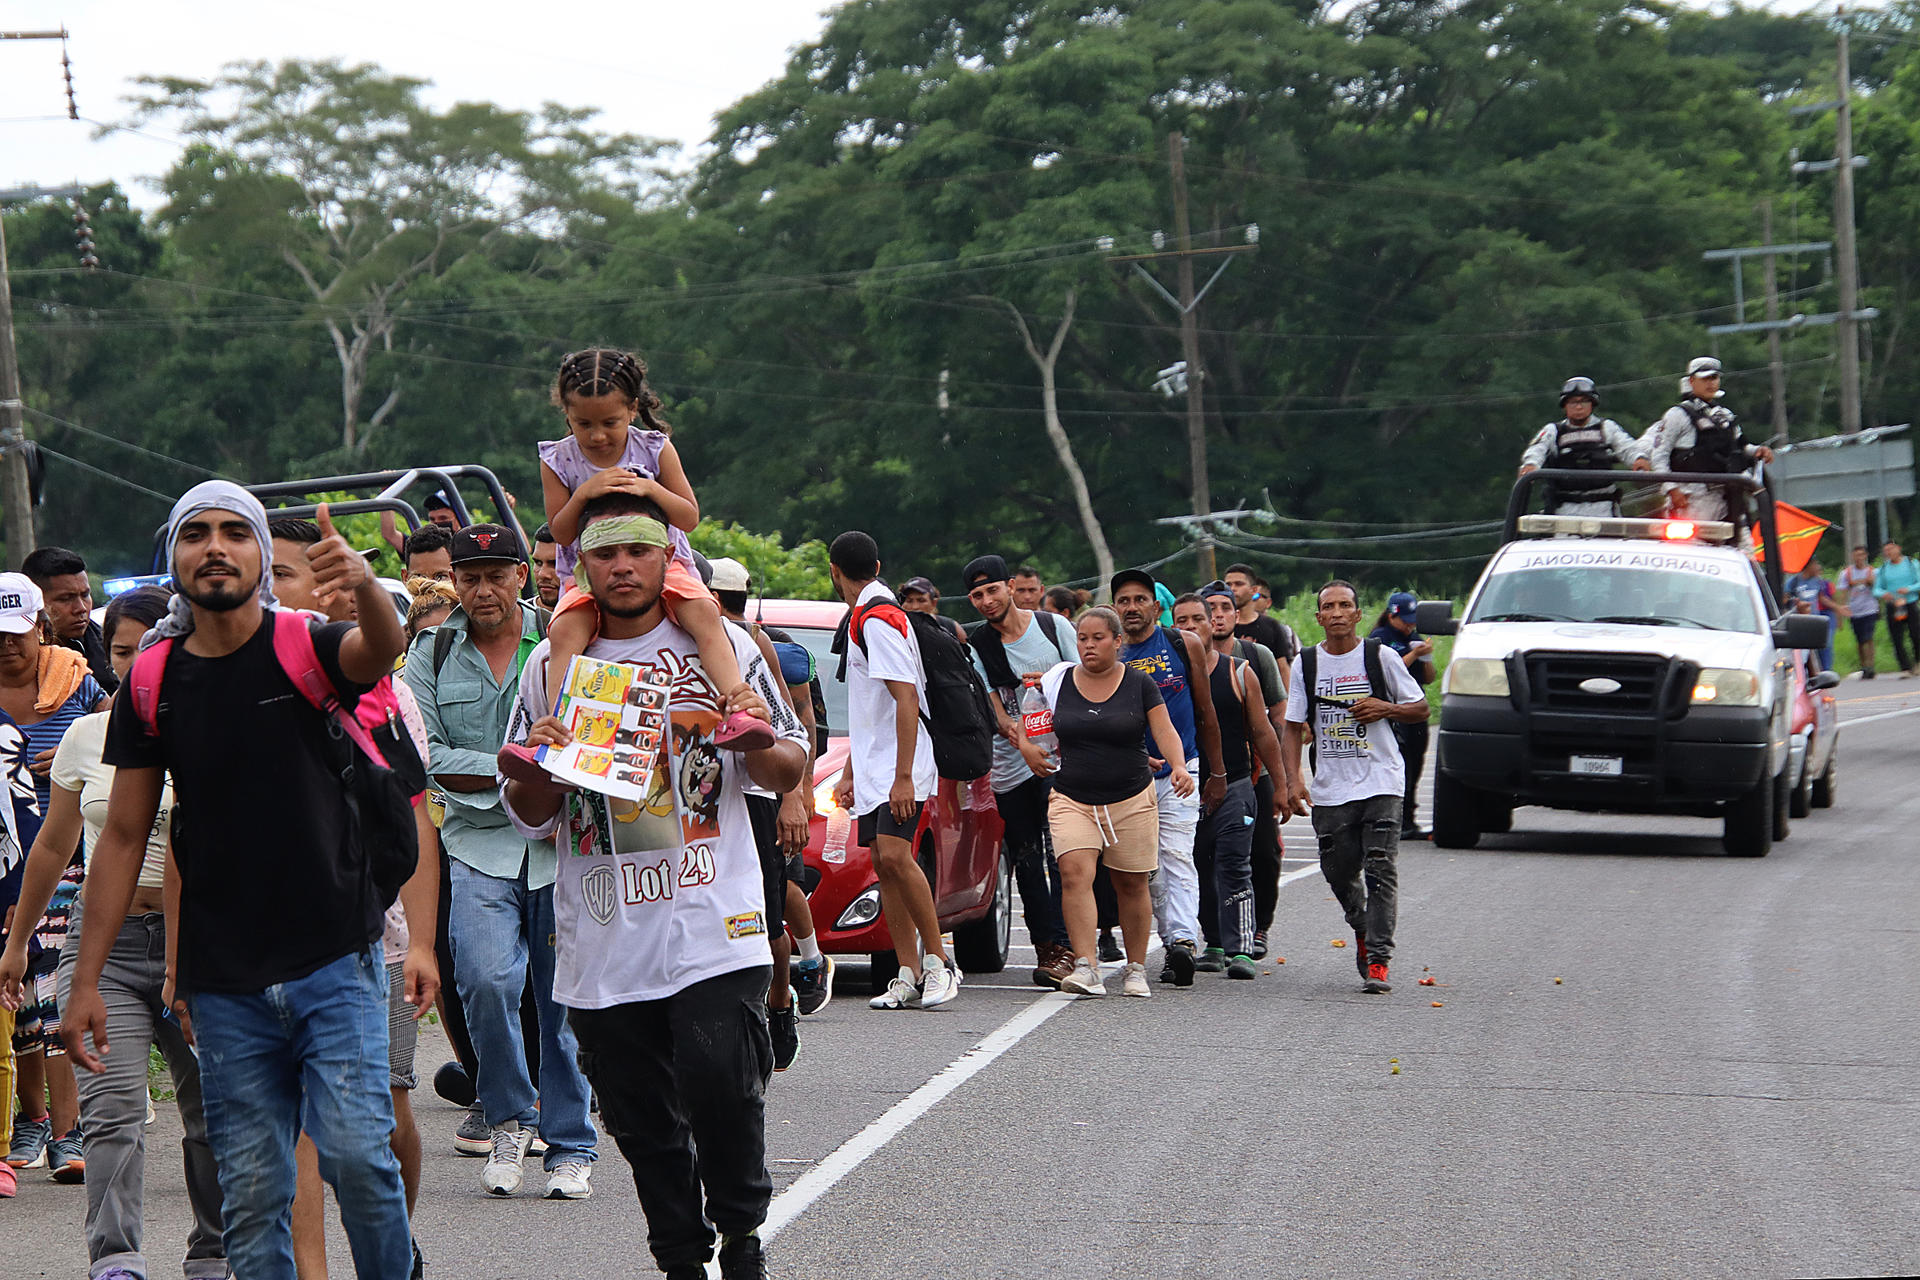 Caravana migrante de venezolanos partió desde el sur de México hacia EE. UU.